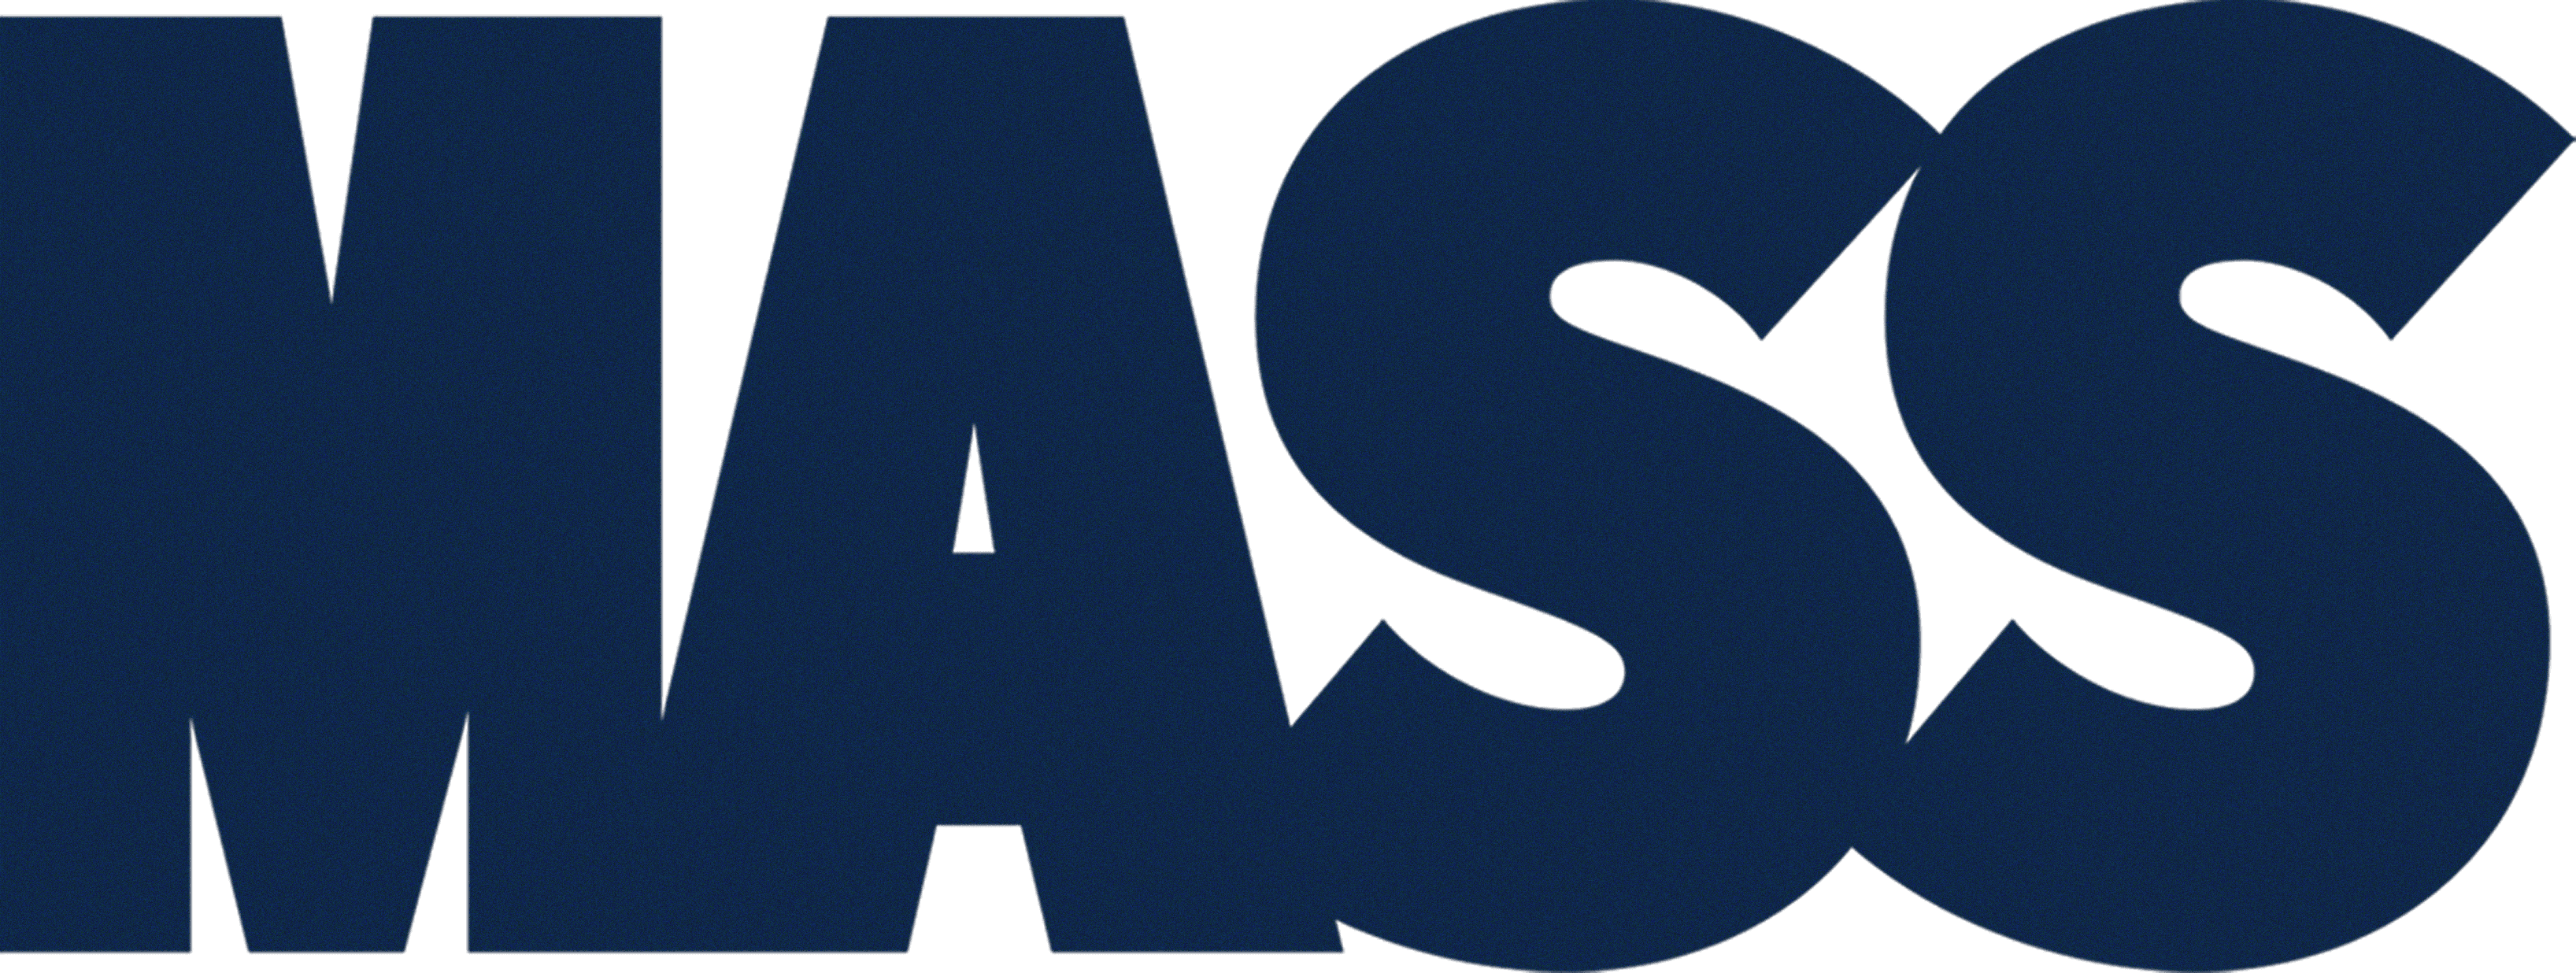 Mass logo